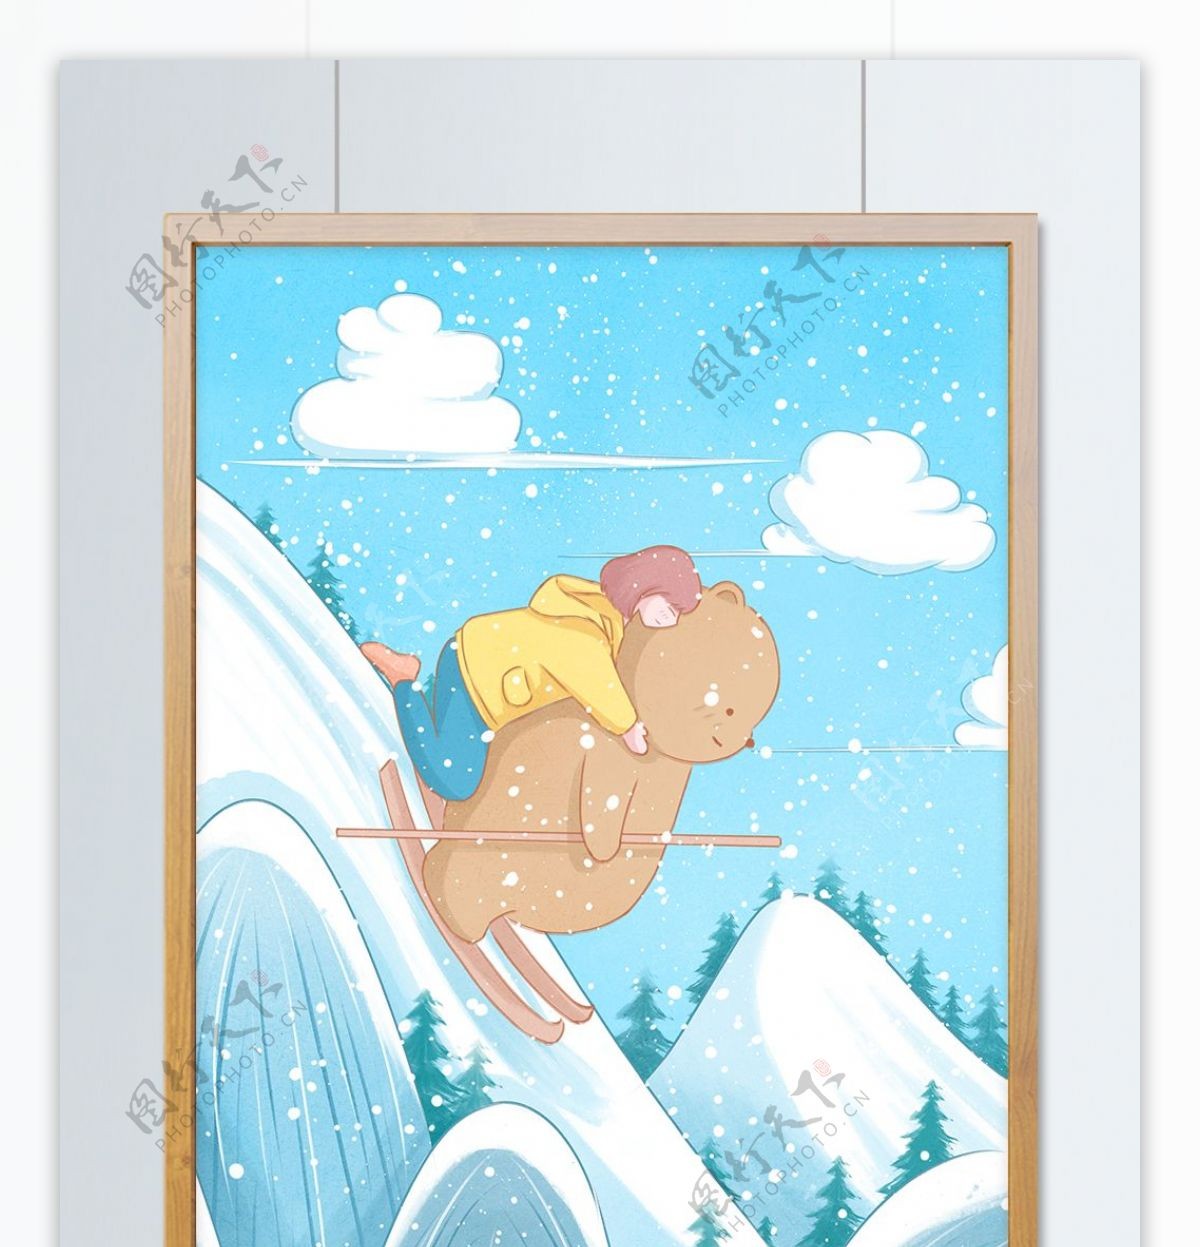 冬季滑雪场景小清新插画背着女孩滑雪的小熊